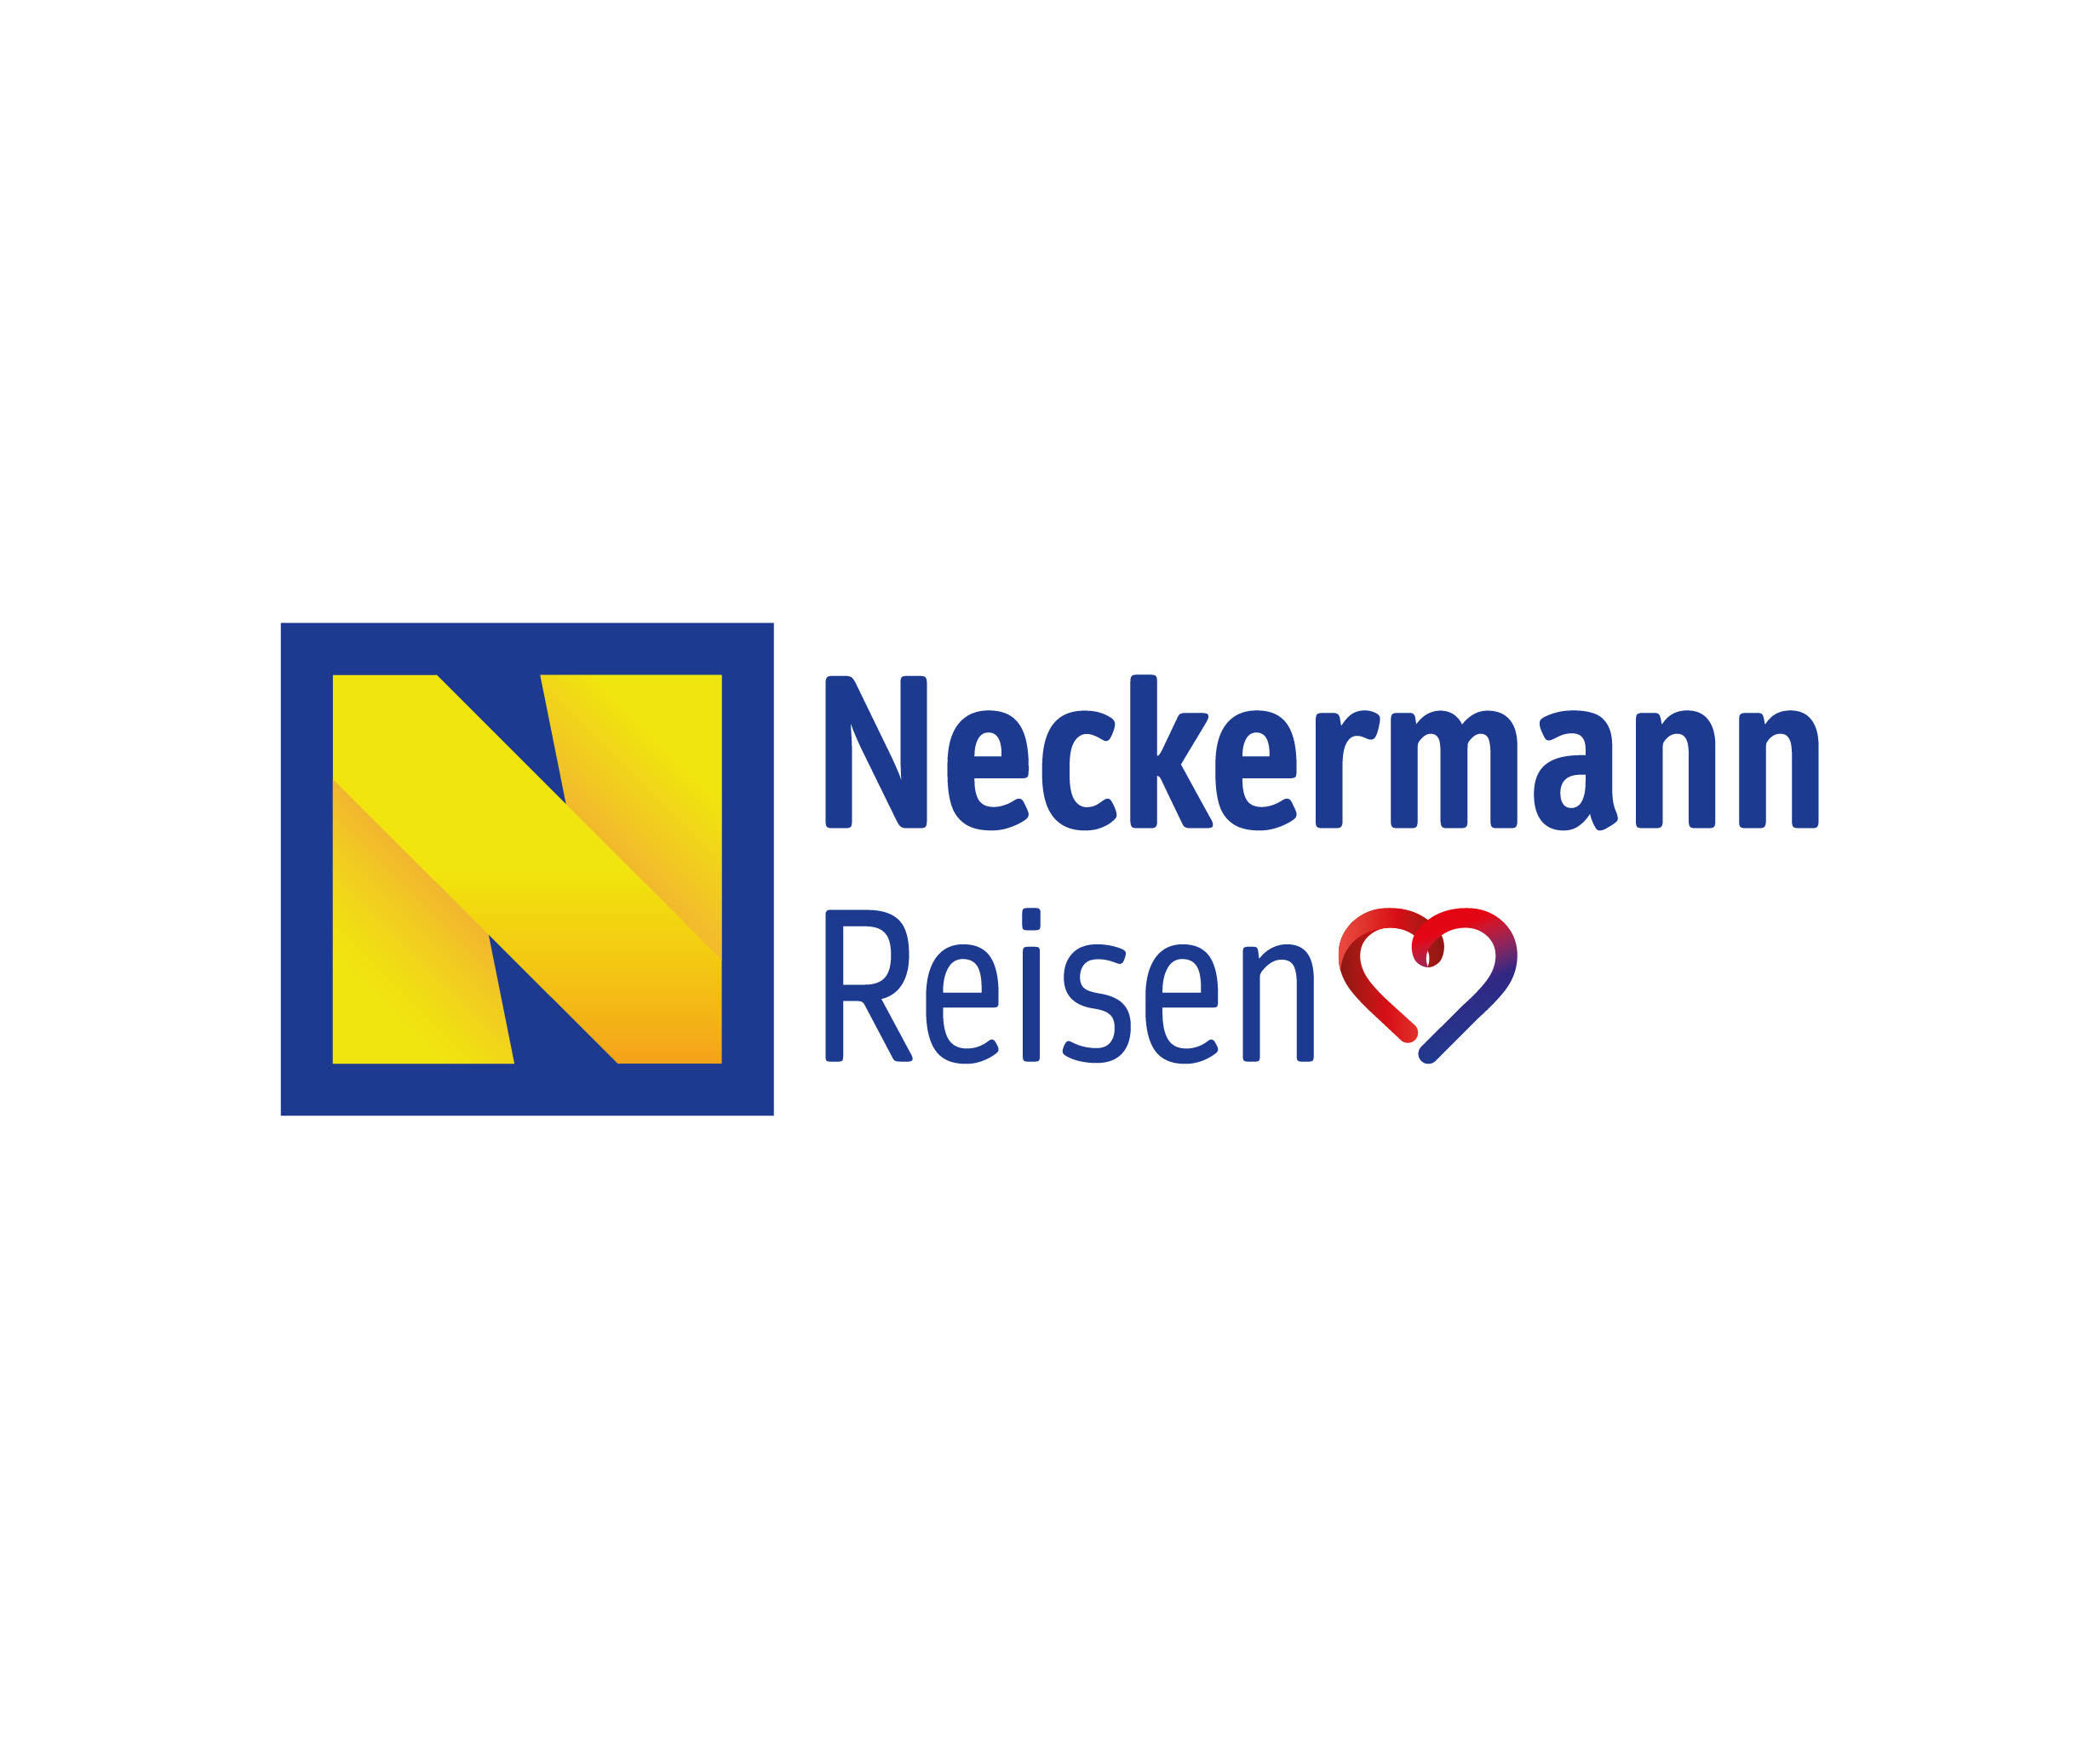 Neckermann Reisen возвращается на рынок туристических услуг